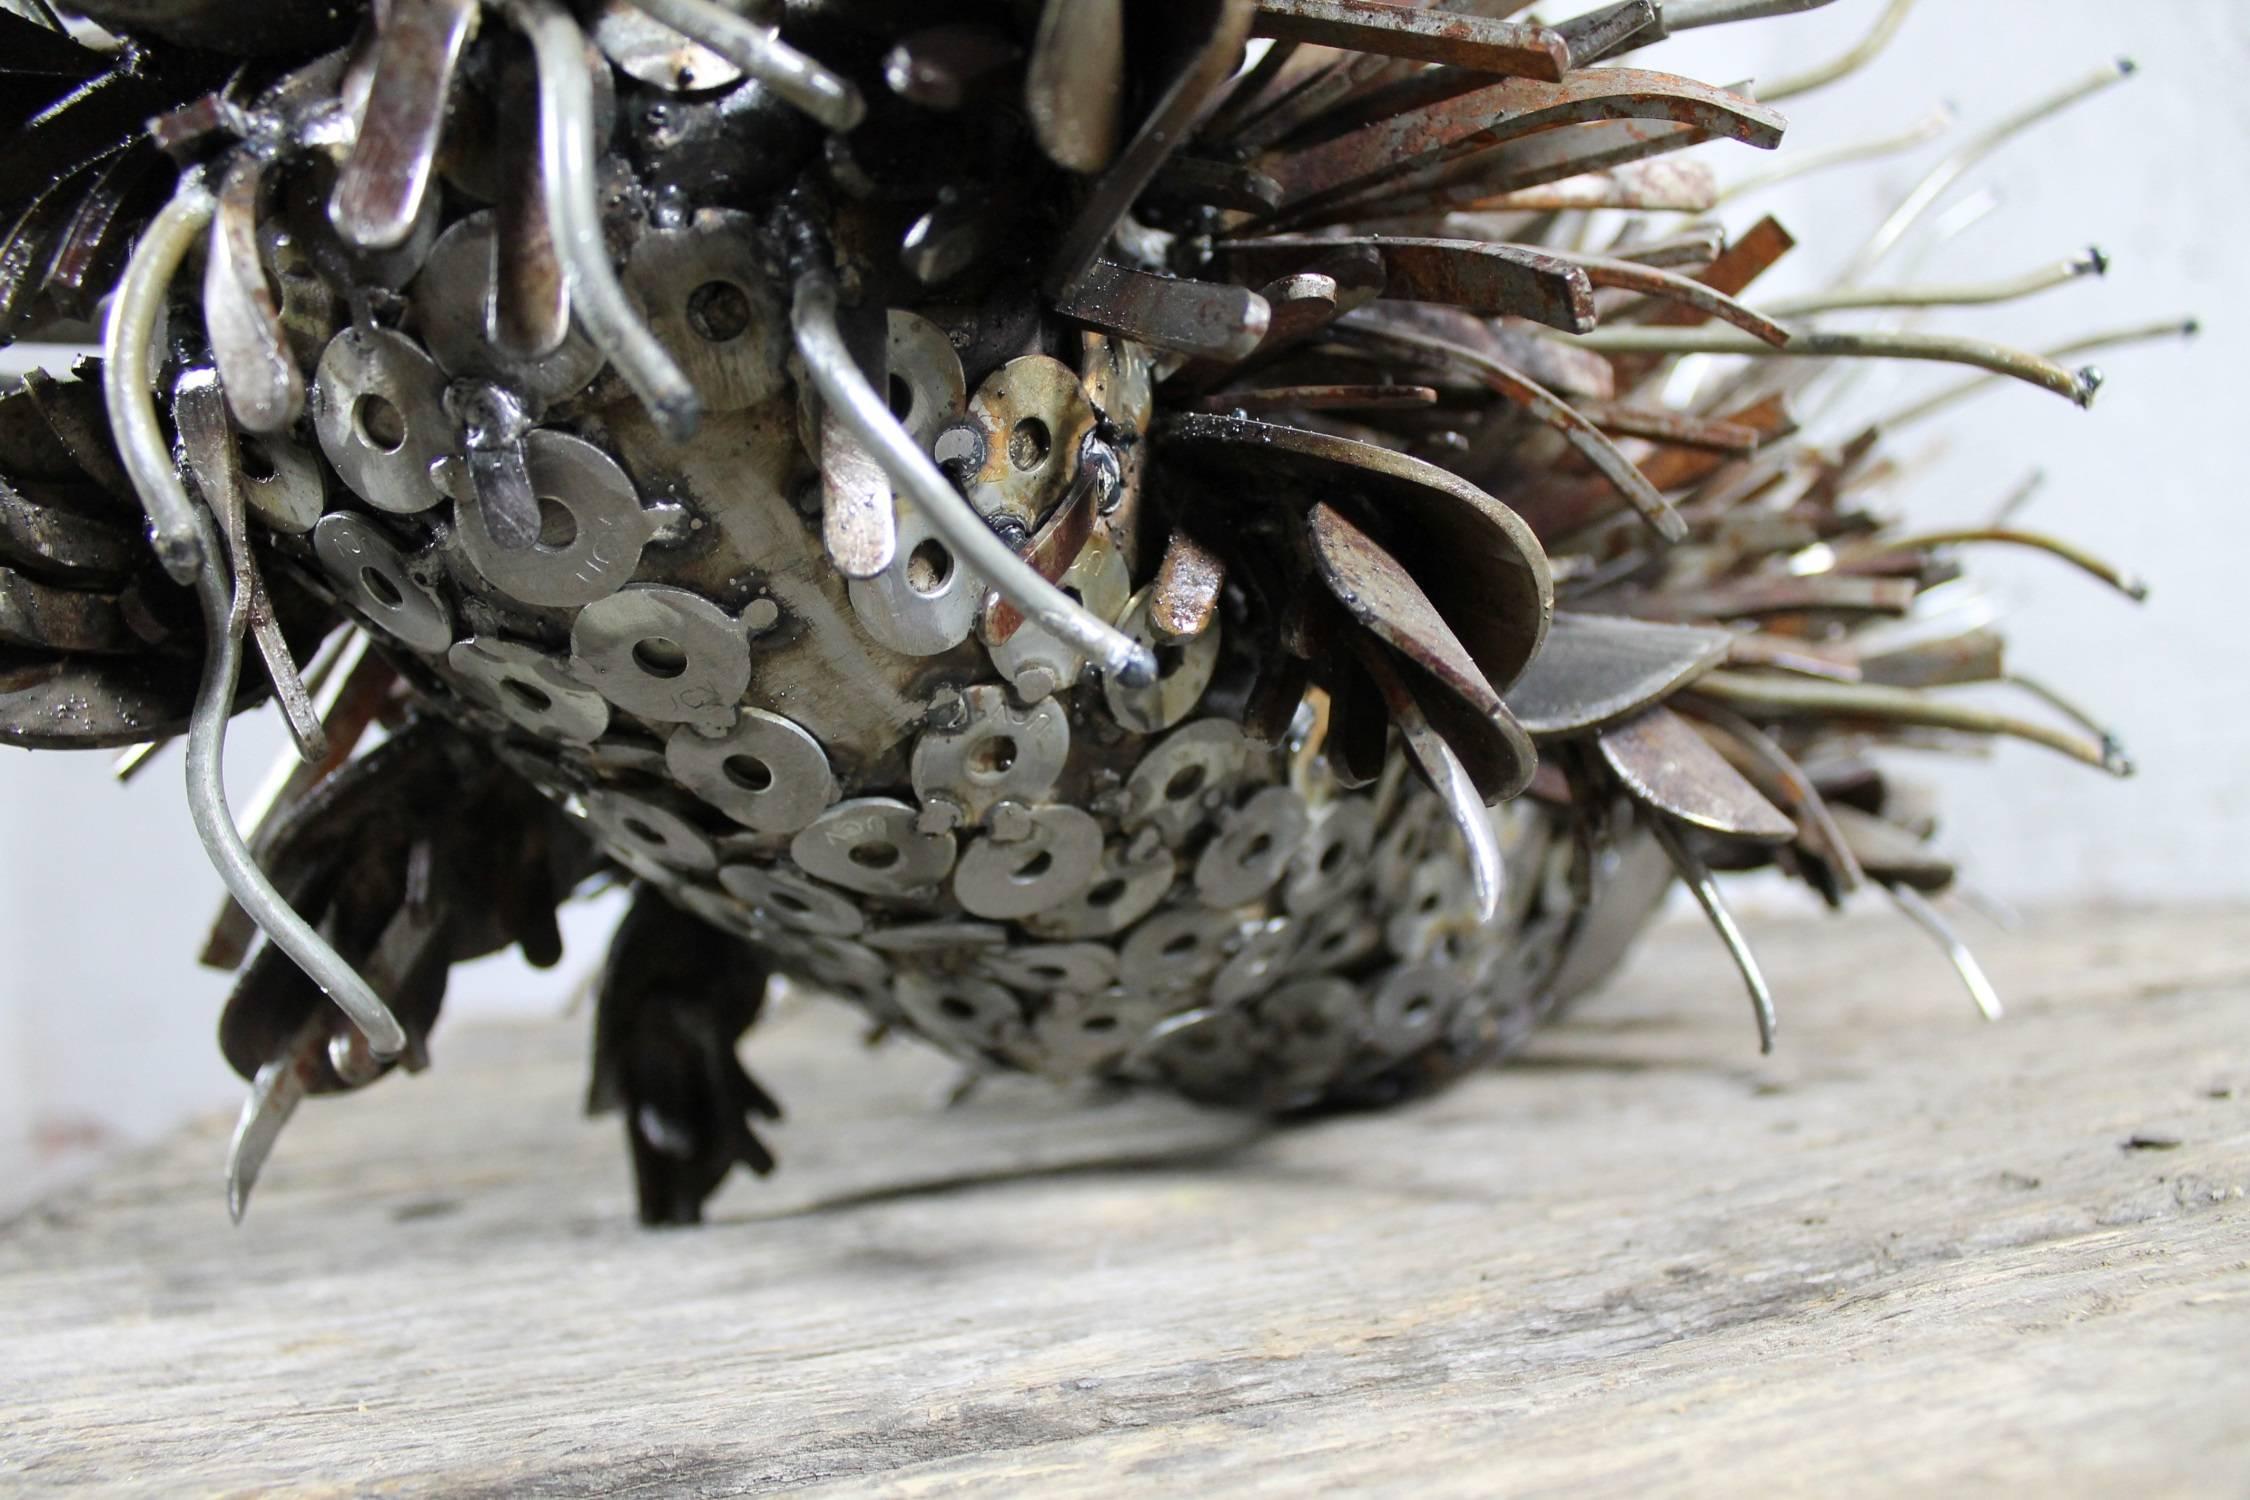 Welded Caterpillar Sculpture or Garden Art of Reclaimed Metal by Jason Startup